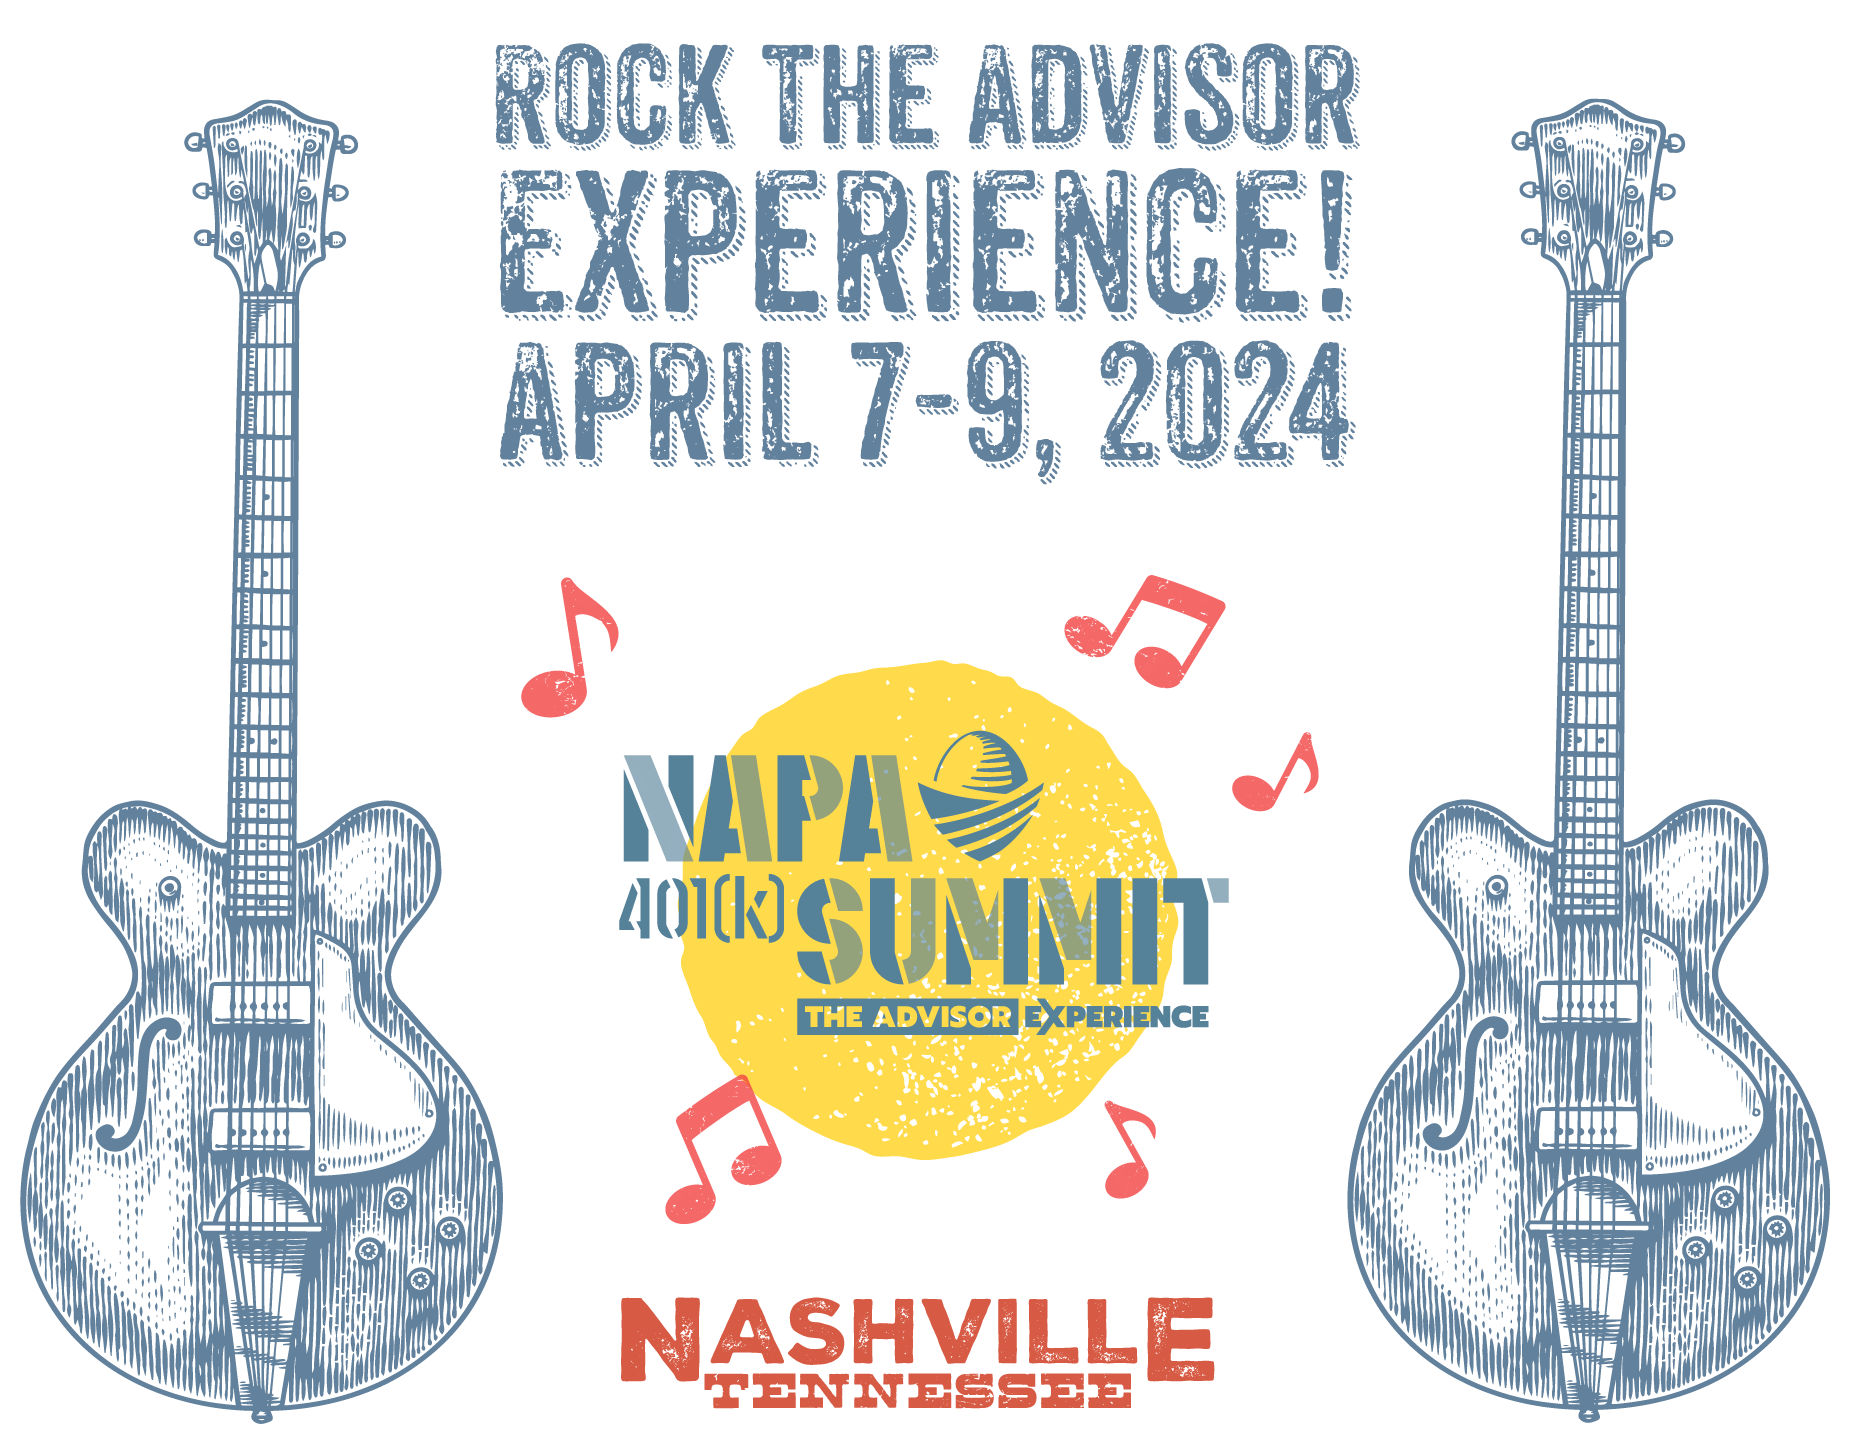 Nashville Save NAPA 401(k) Summit